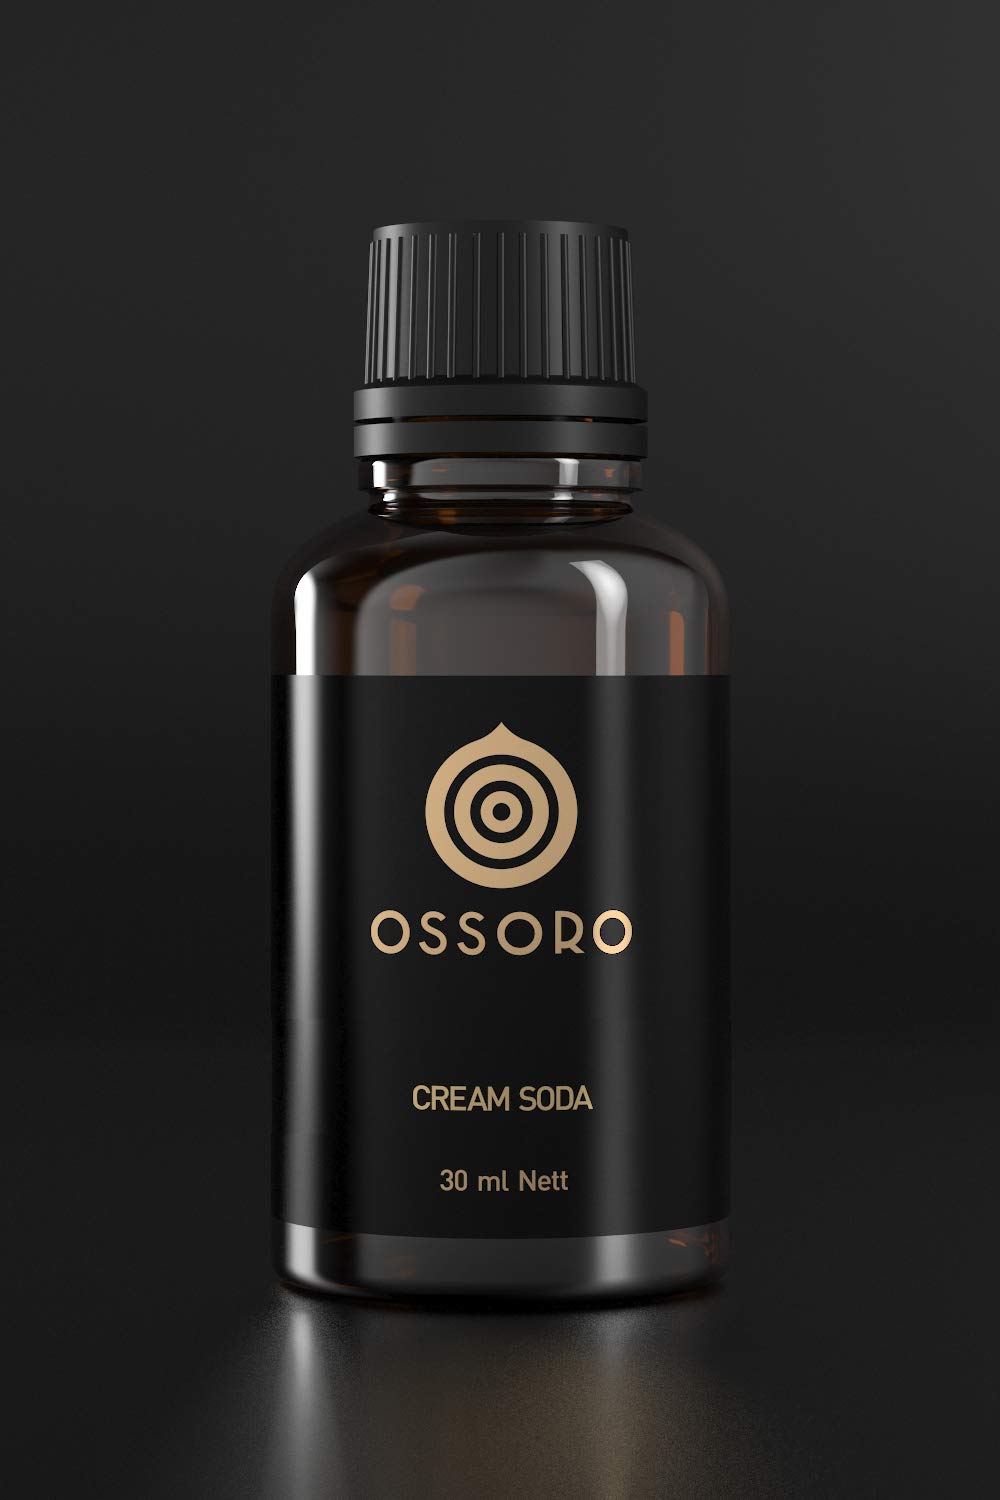 Ossoro Cream Soda Image